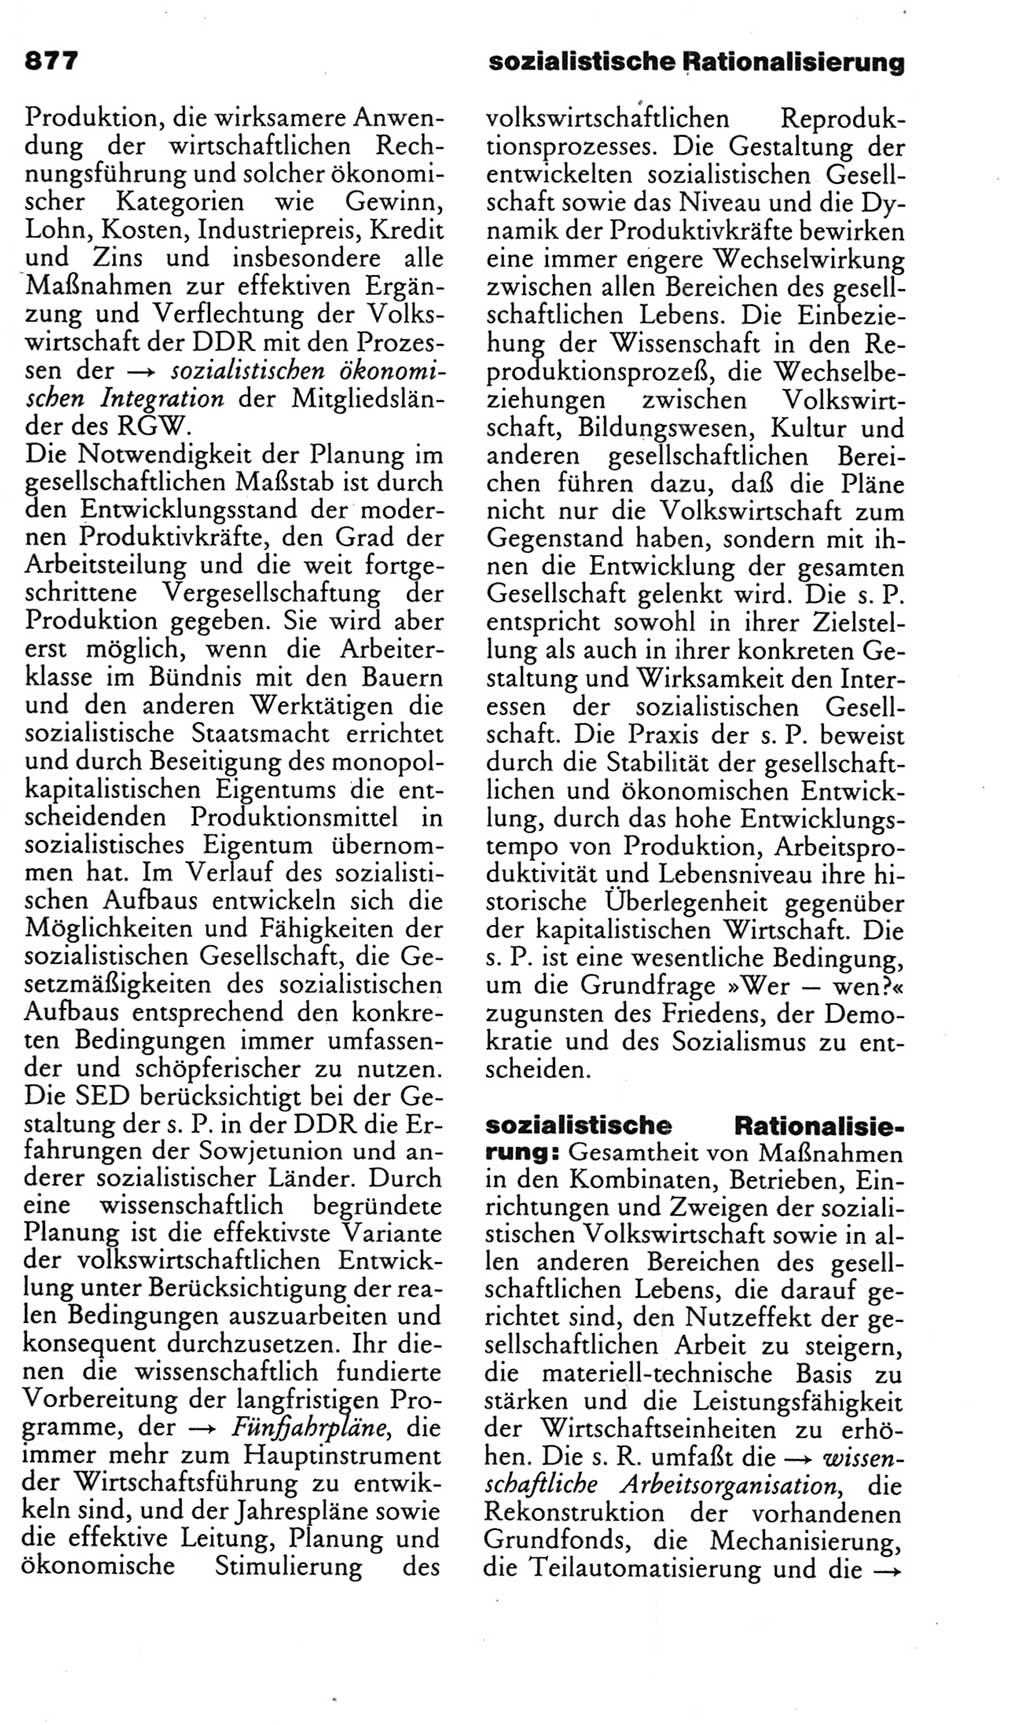 Kleines politisches Wörterbuch [Deutsche Demokratische Republik (DDR)] 1985, Seite 877 (Kl. pol. Wb. DDR 1985, S. 877)